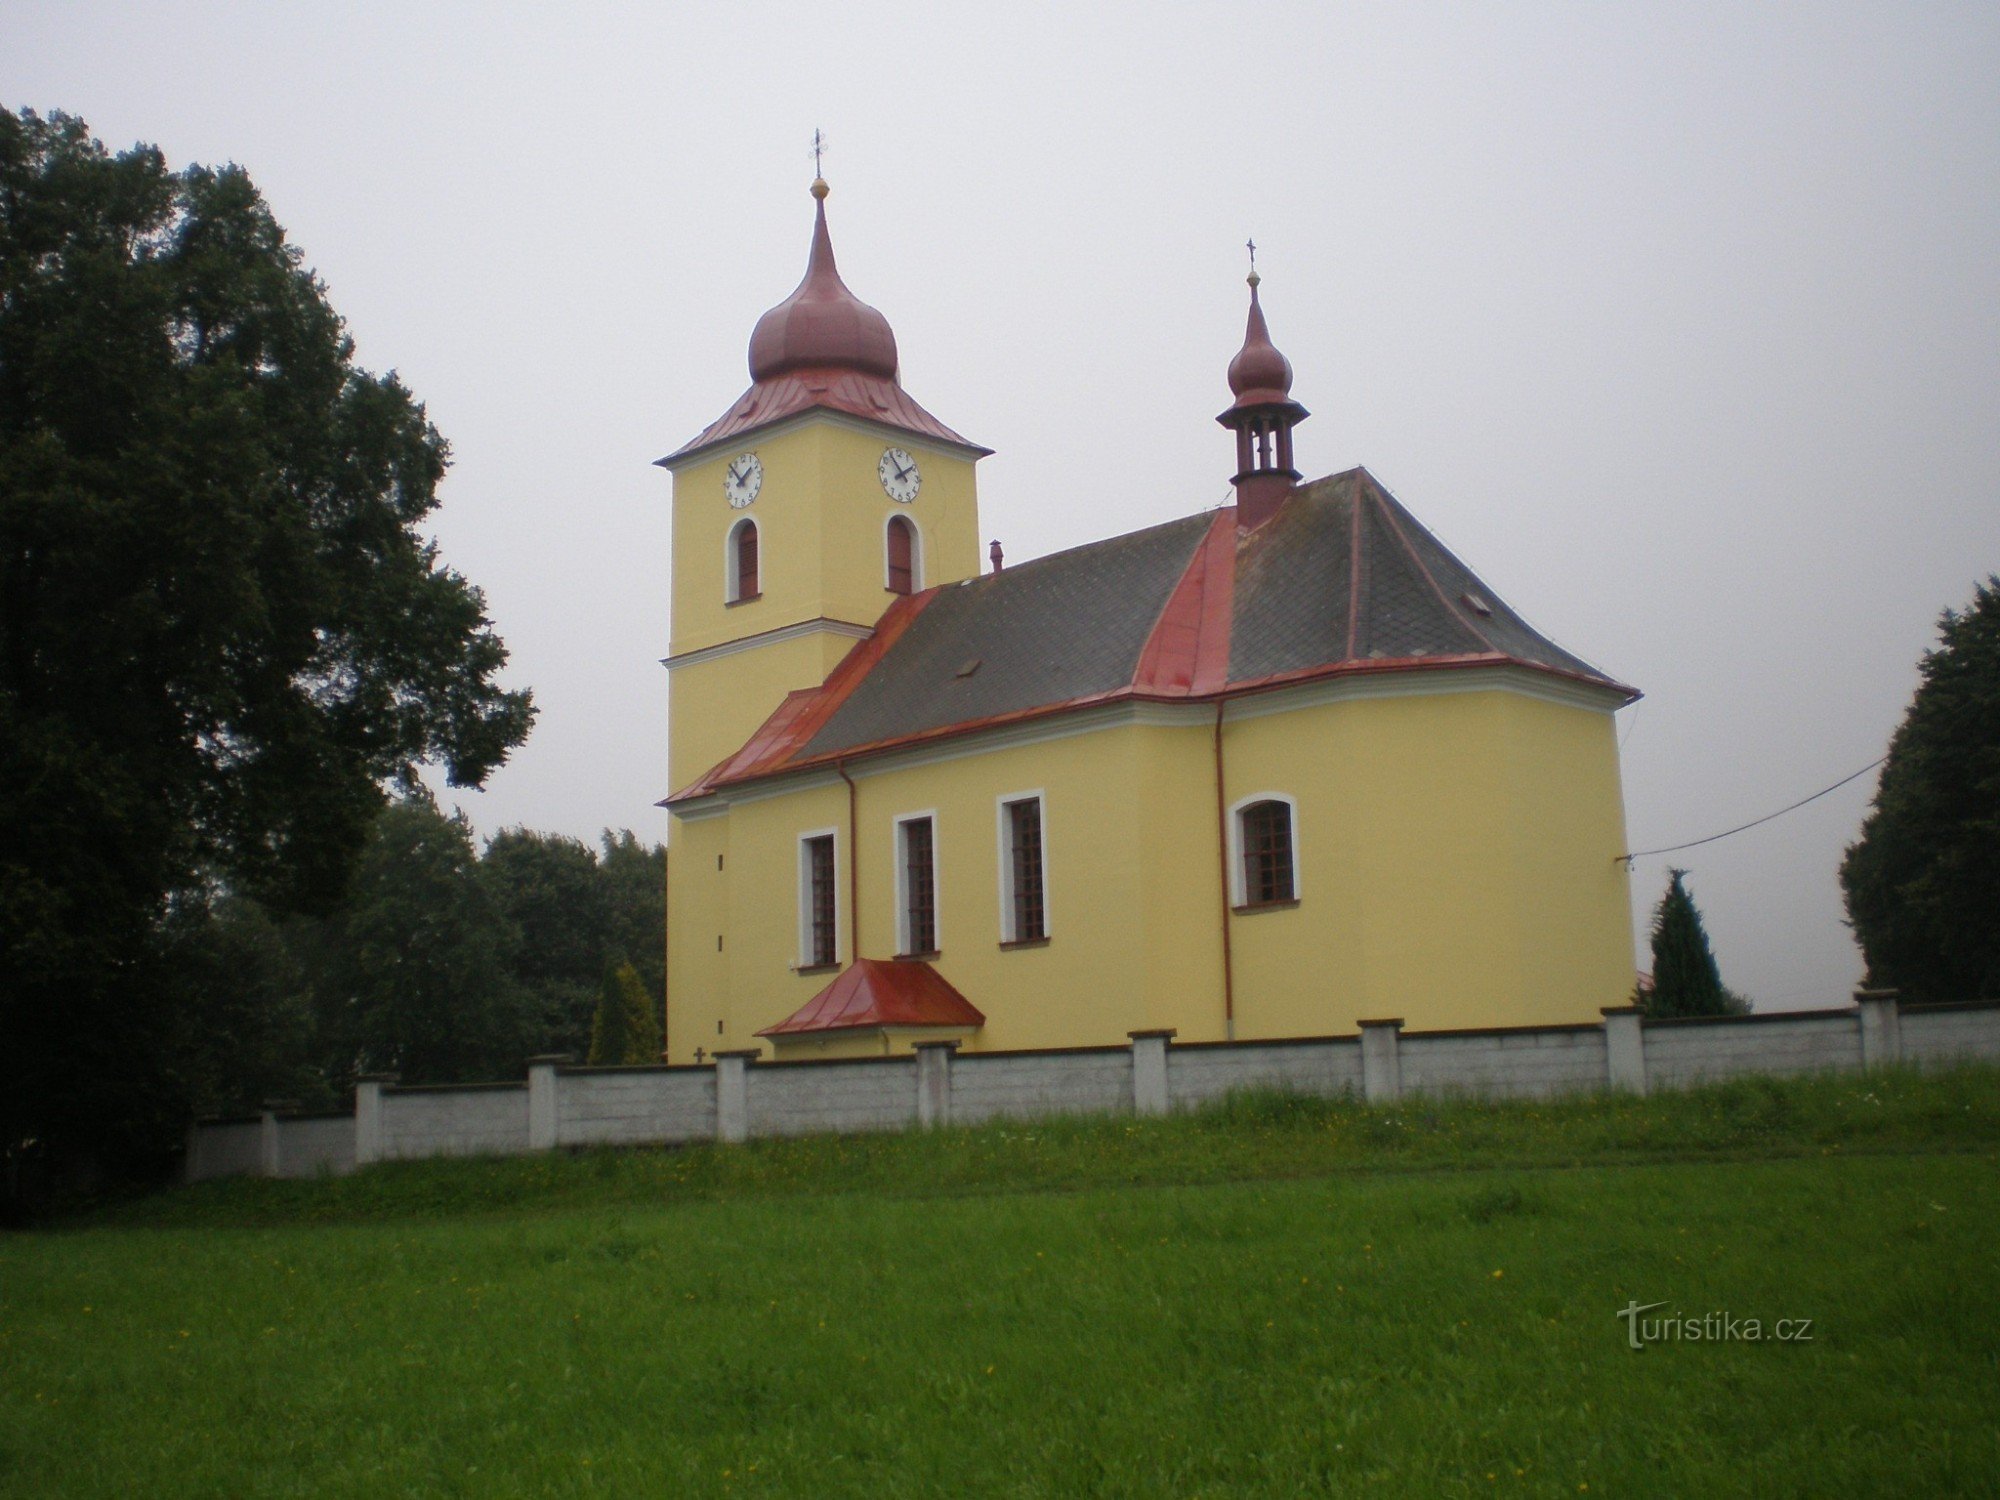 Vryprachtice - Biserica Schimbarea la Față a Domnului